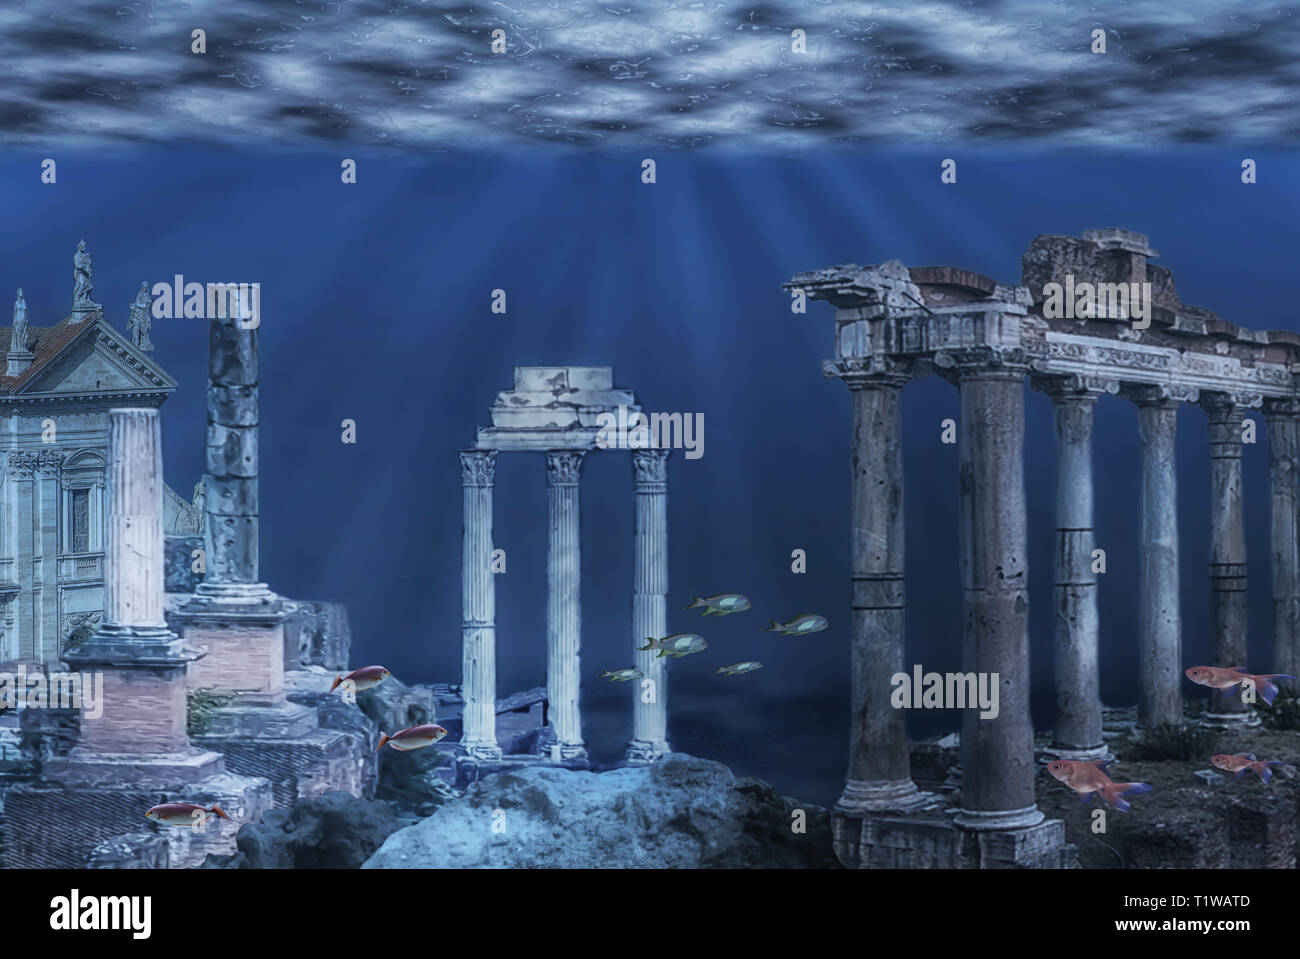 Abbildung: die Ruinen von Atlantis Zivilisation. Unterwasser Ruinen Stockfoto